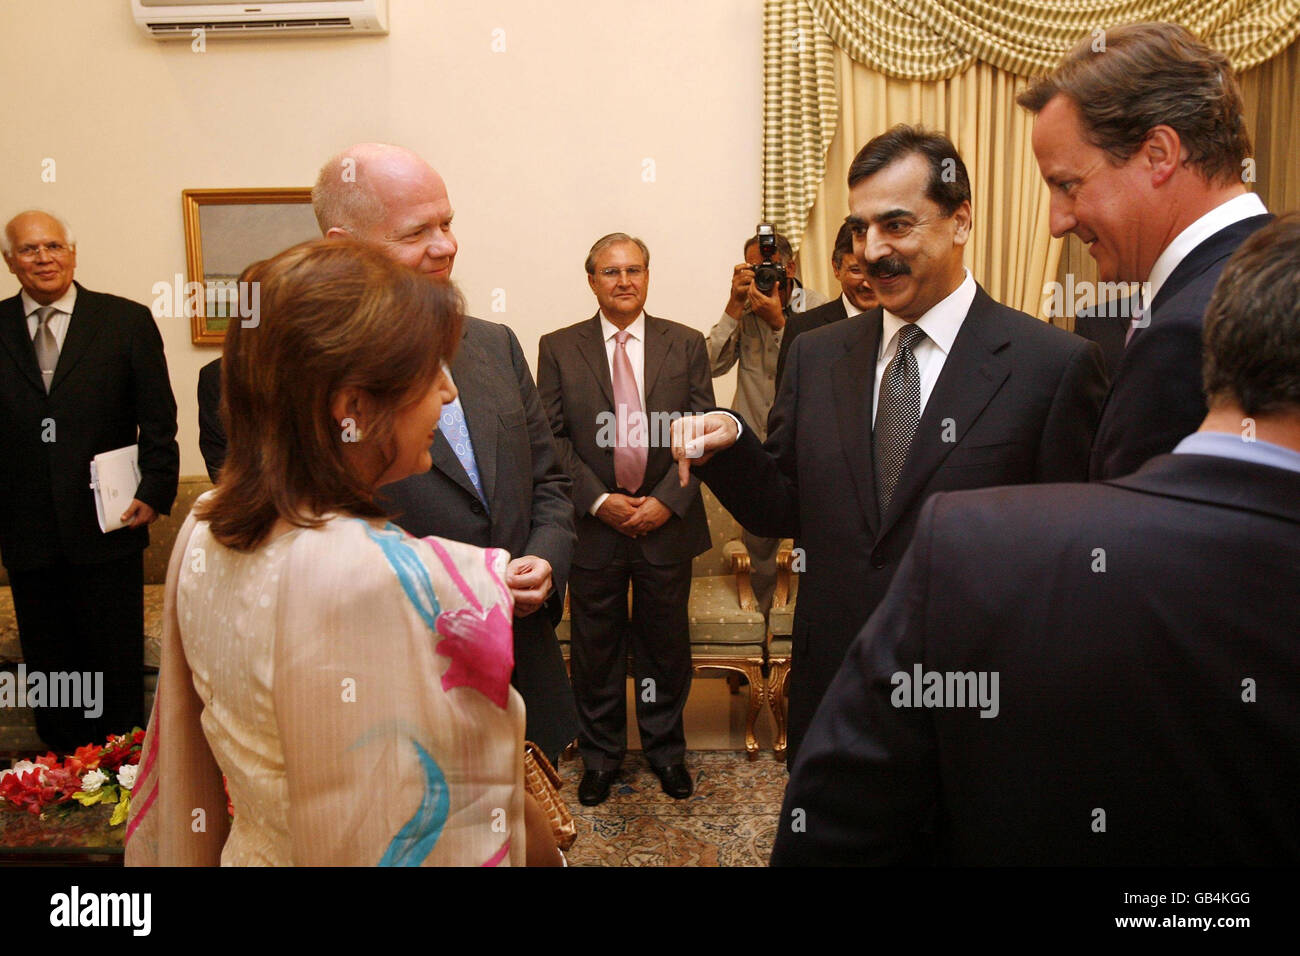 El líder del Partido Conservador David Cameron (derecha) presenta al primer ministro paquistaní, Yousuf raza Gilani, a la ministra de Cohesión en la sombra, la baronesa Sayeeda Warsi (más cercana a la izquierda) y al Secretario de Asuntos Exteriores en la sombra, William Hague, en la Casa del primer ministro en Islamabad, Pakistán. Foto de stock